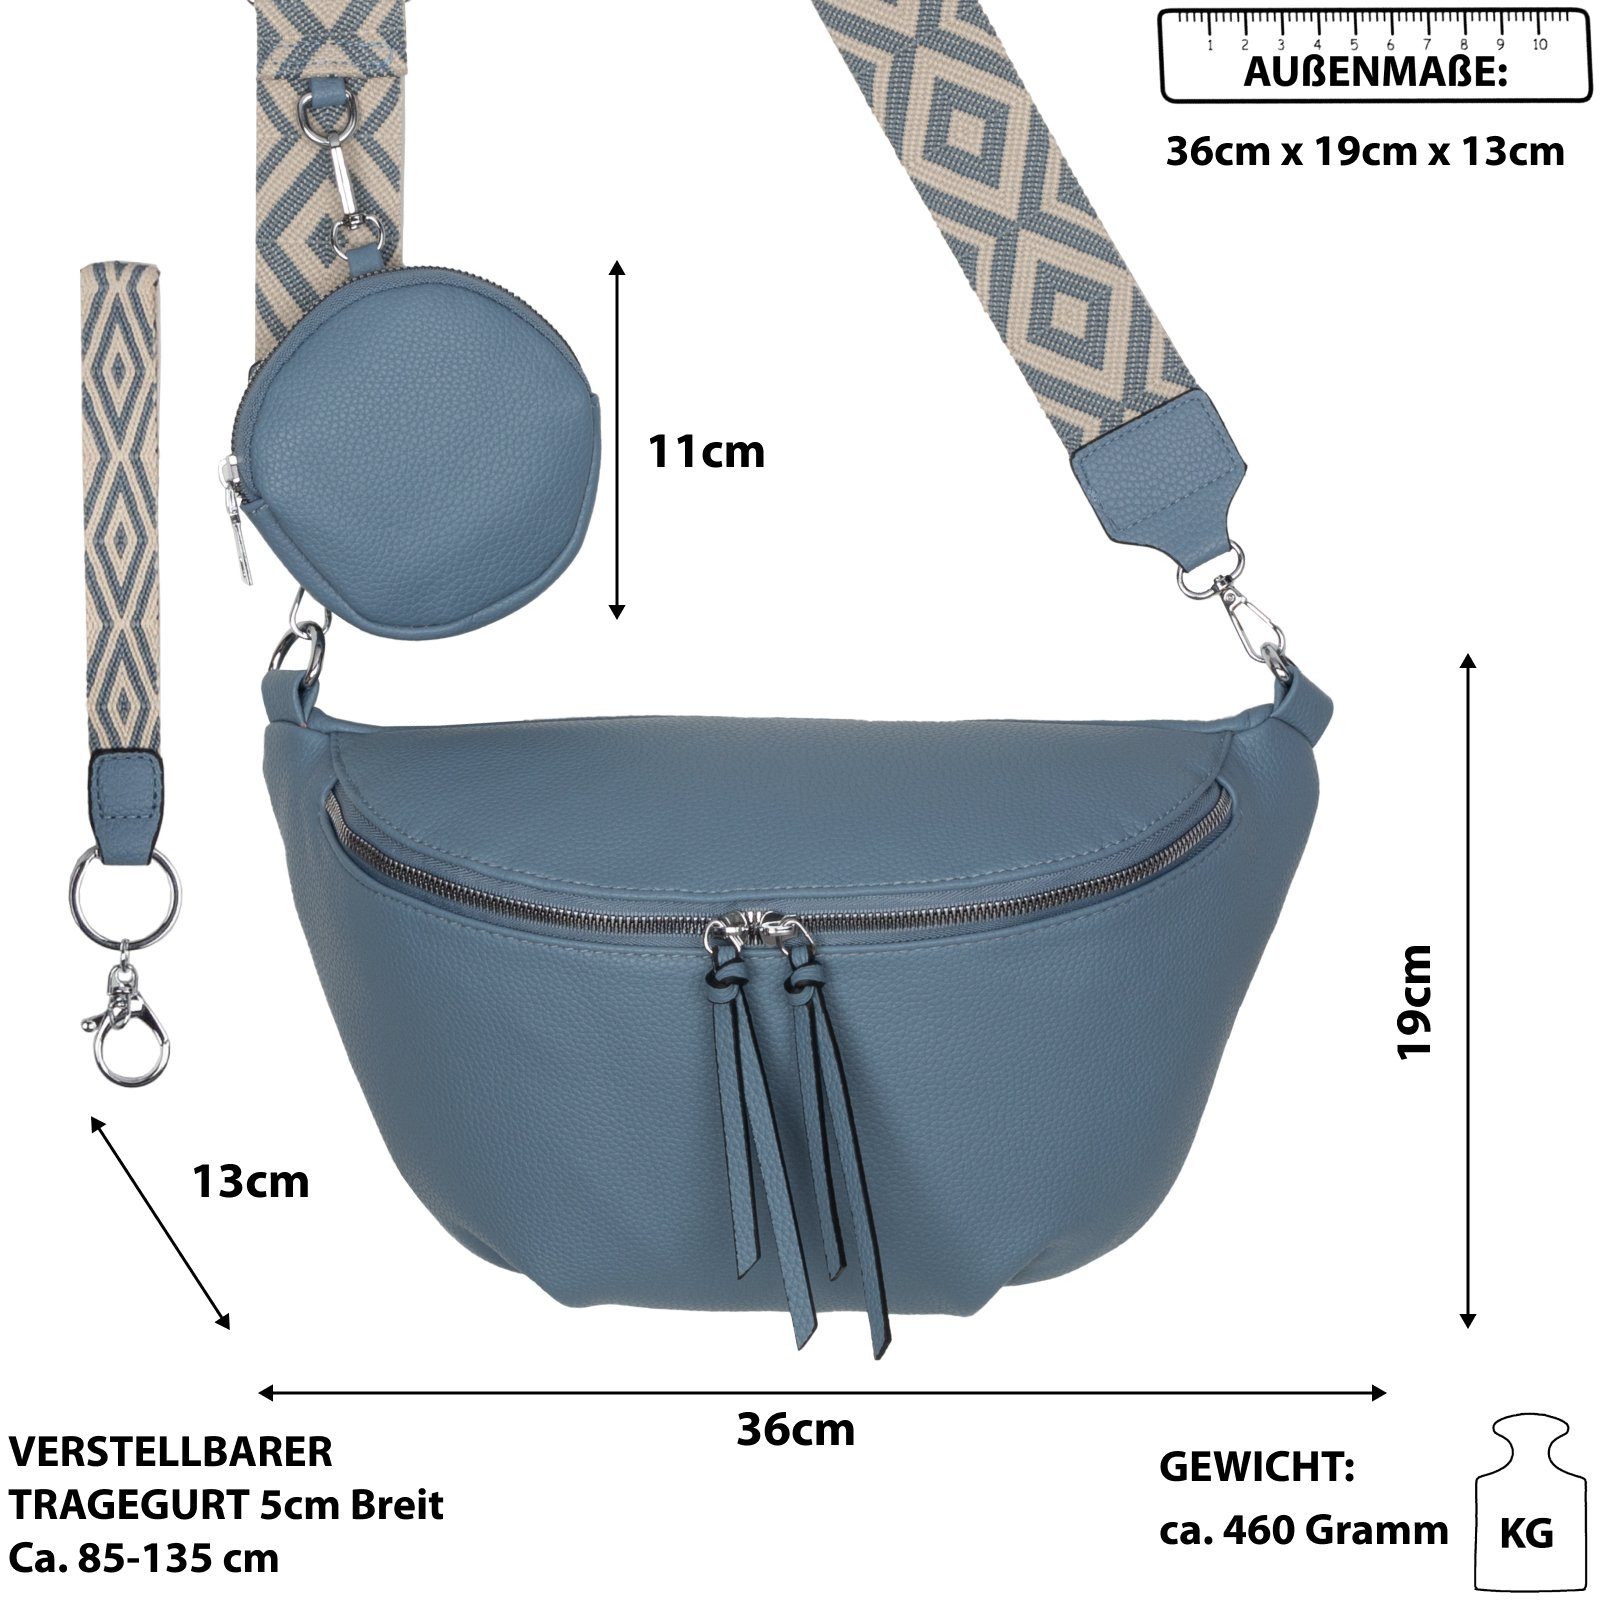 Hüfttasche EAAKIE Schultertasche, tragbar Umhängetasche Gürteltasche als Italy-D, Crossbody-Bag CrossOver, Kunstleder BLUE Bauchtasche Umhängetasche